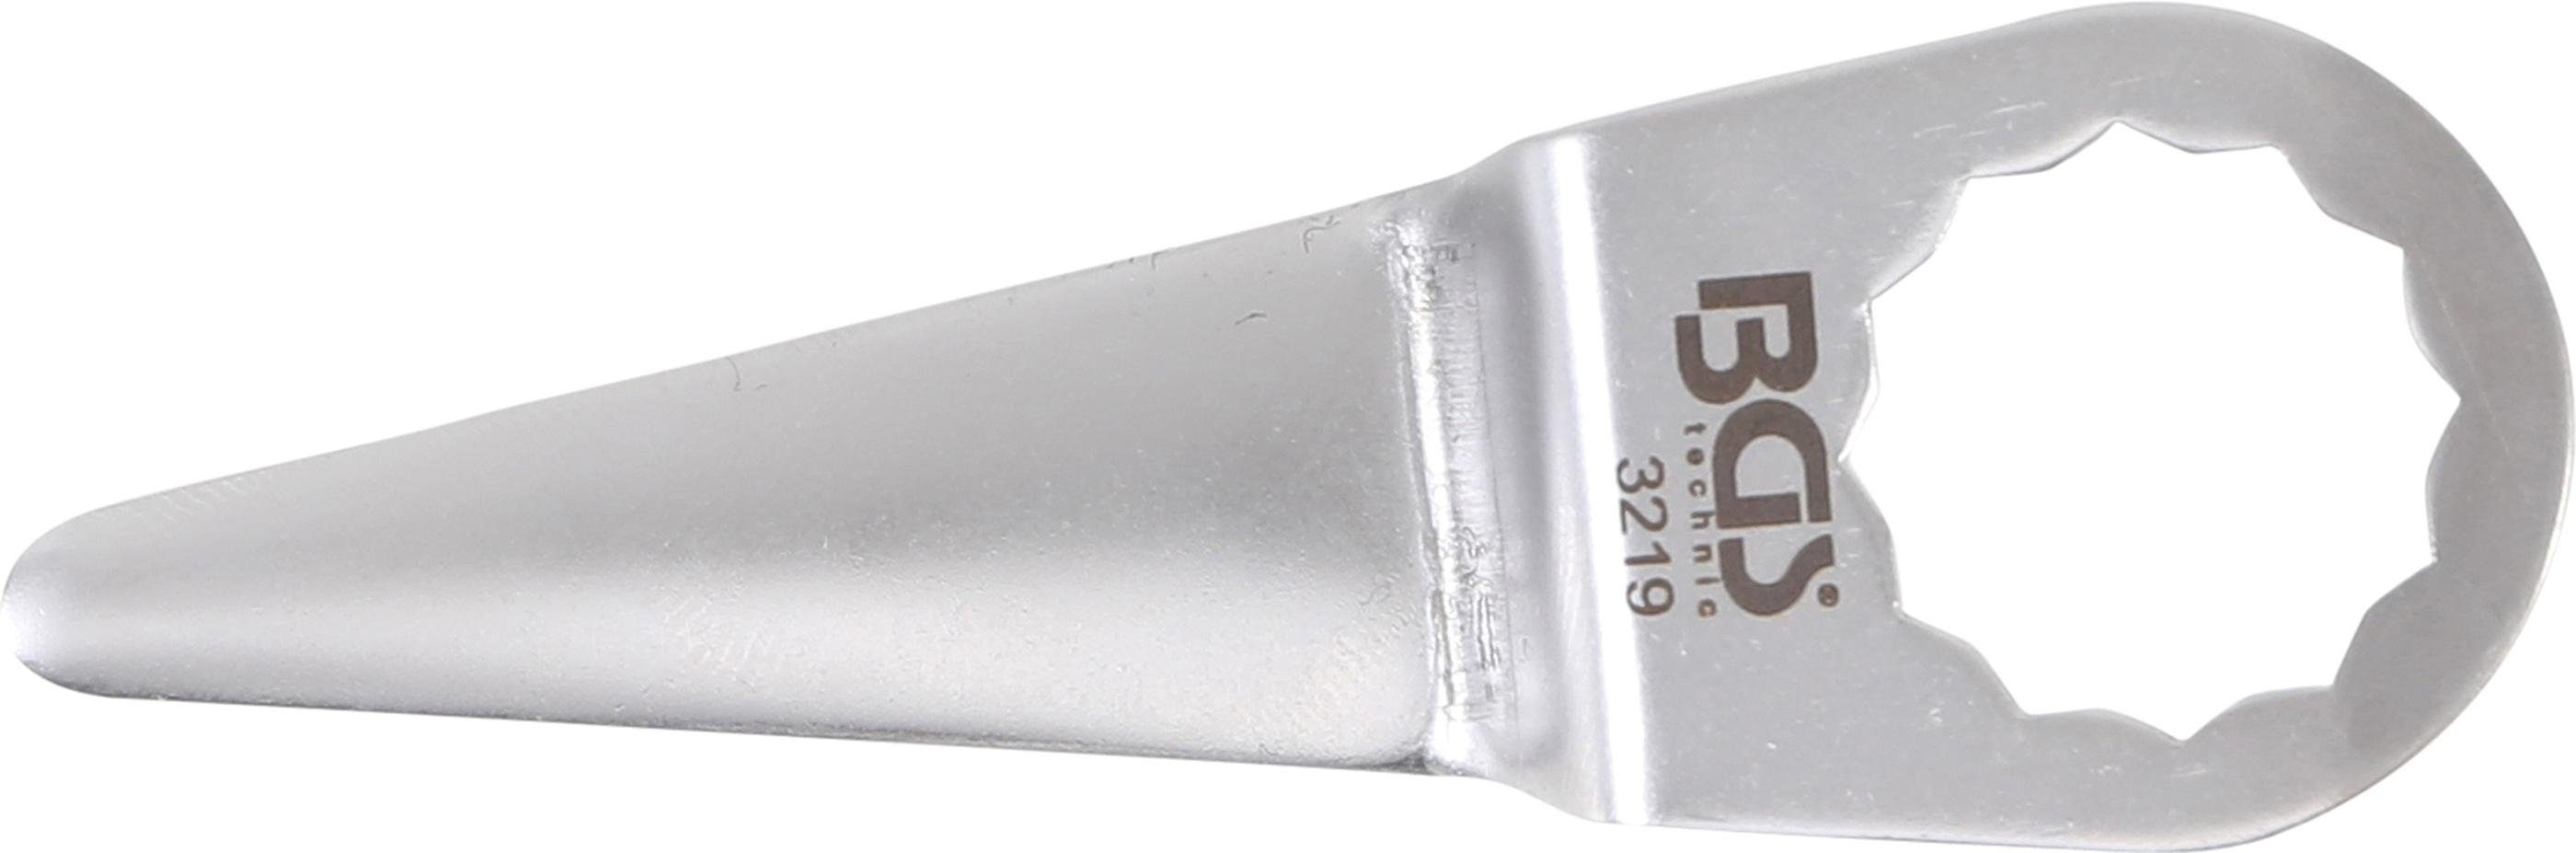 BGS technic Ausblaspistole Schneidmesser, für Art. 3218, 9291, 52 x 1 mm